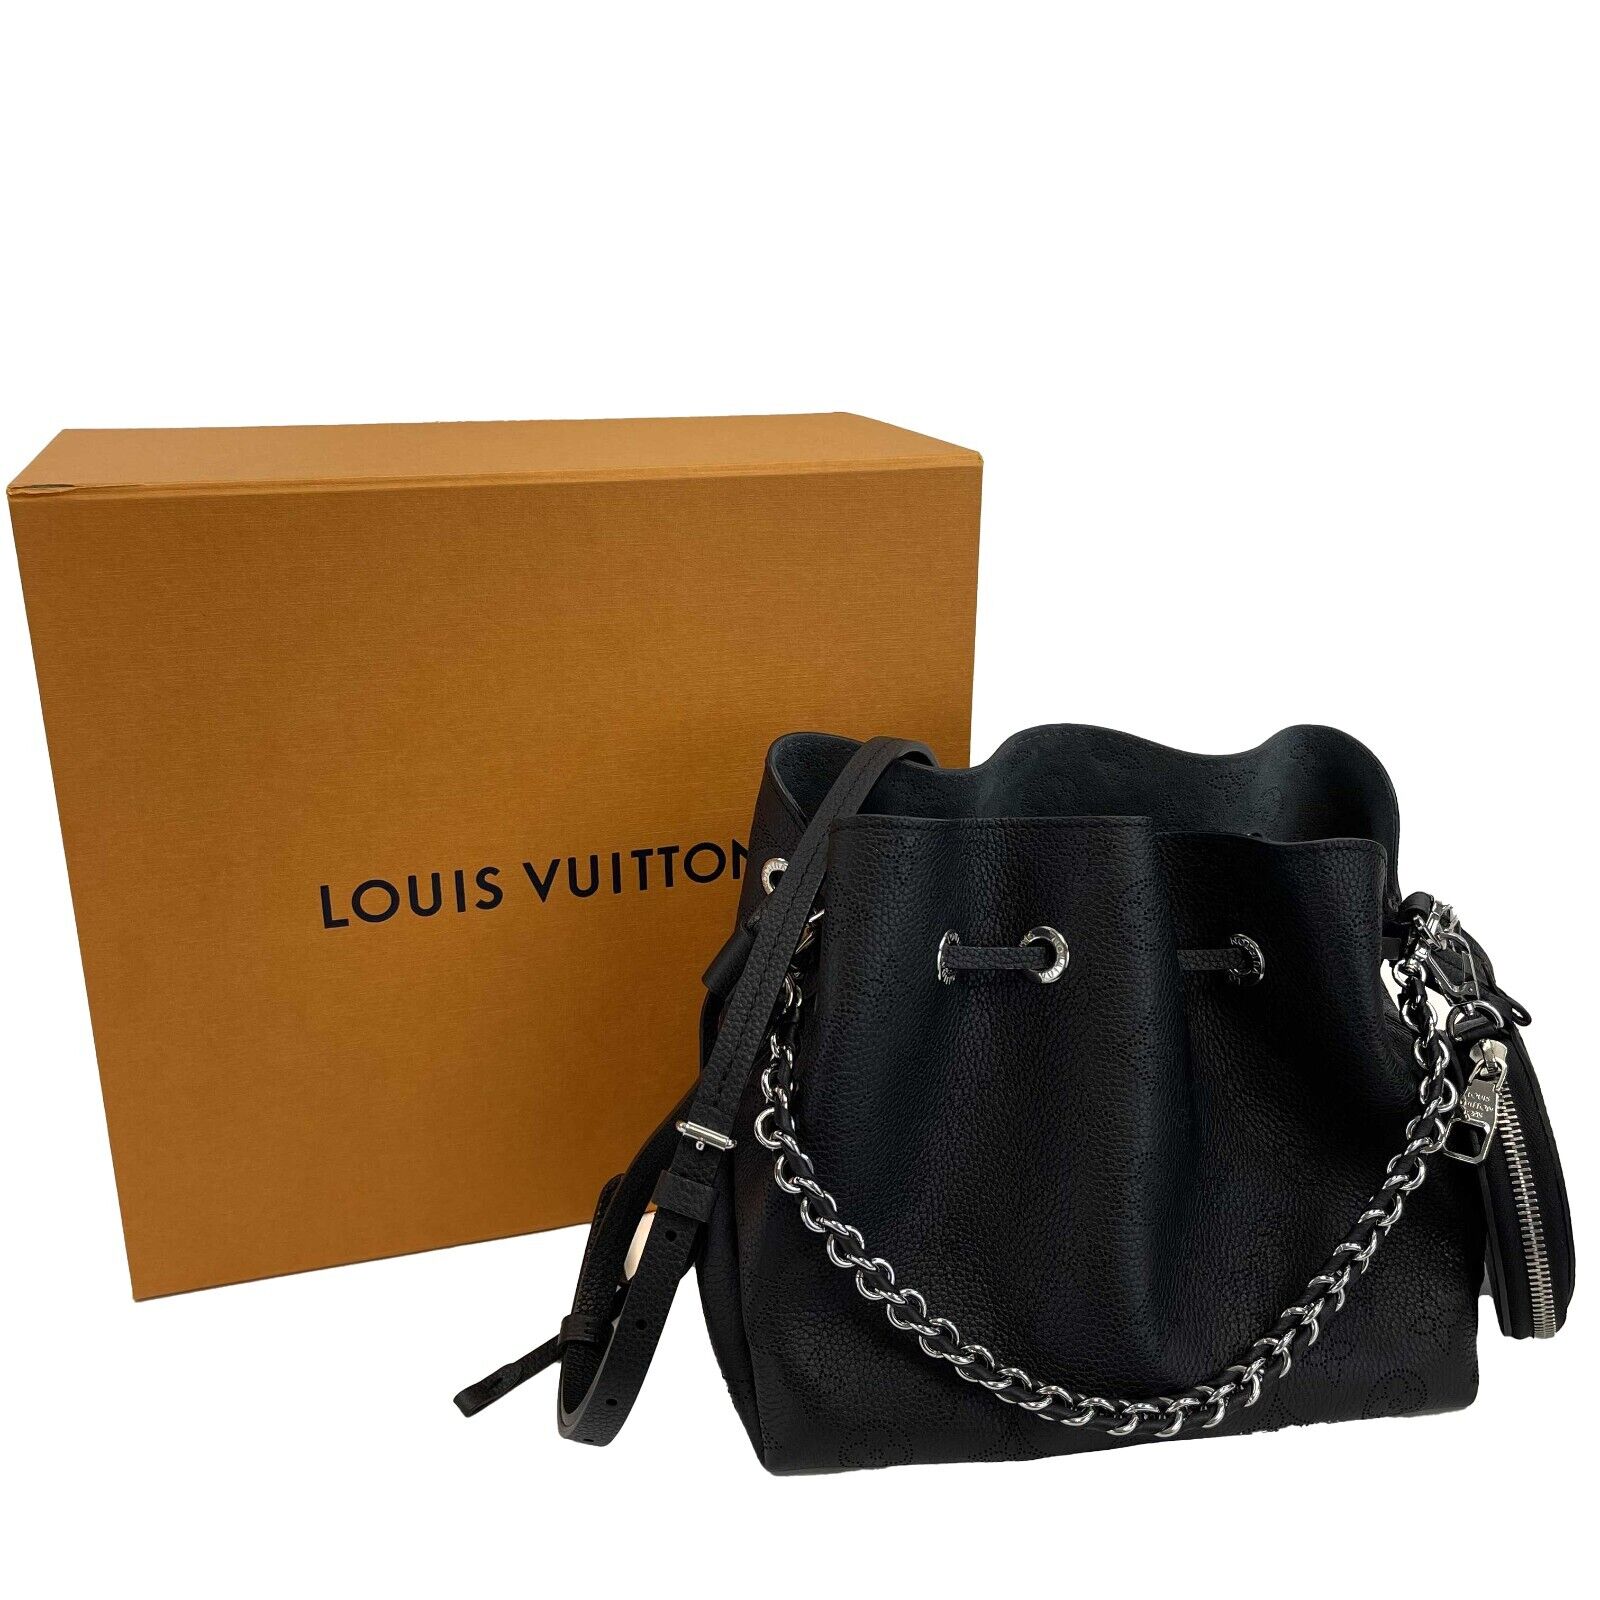 LOUIS VUITTON Bella Mahina Calf Leather Tote Shoulder Bag Cream